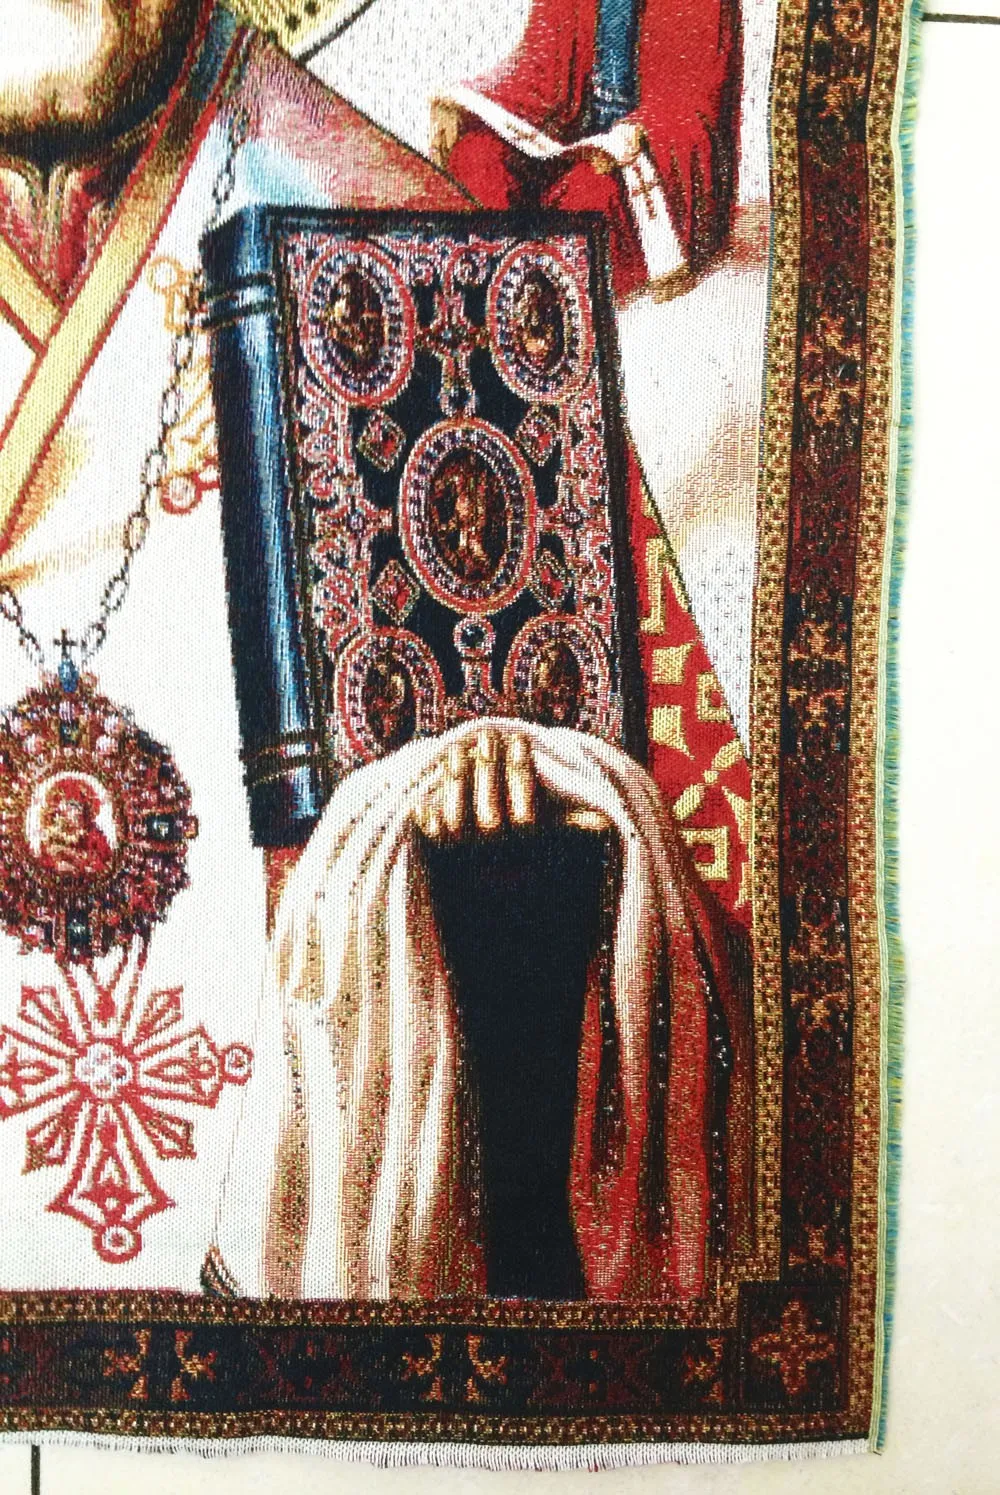 middile РАЗМЕР гобелен гобелены, Христос ткани рисунок, украшение картина, гобелены